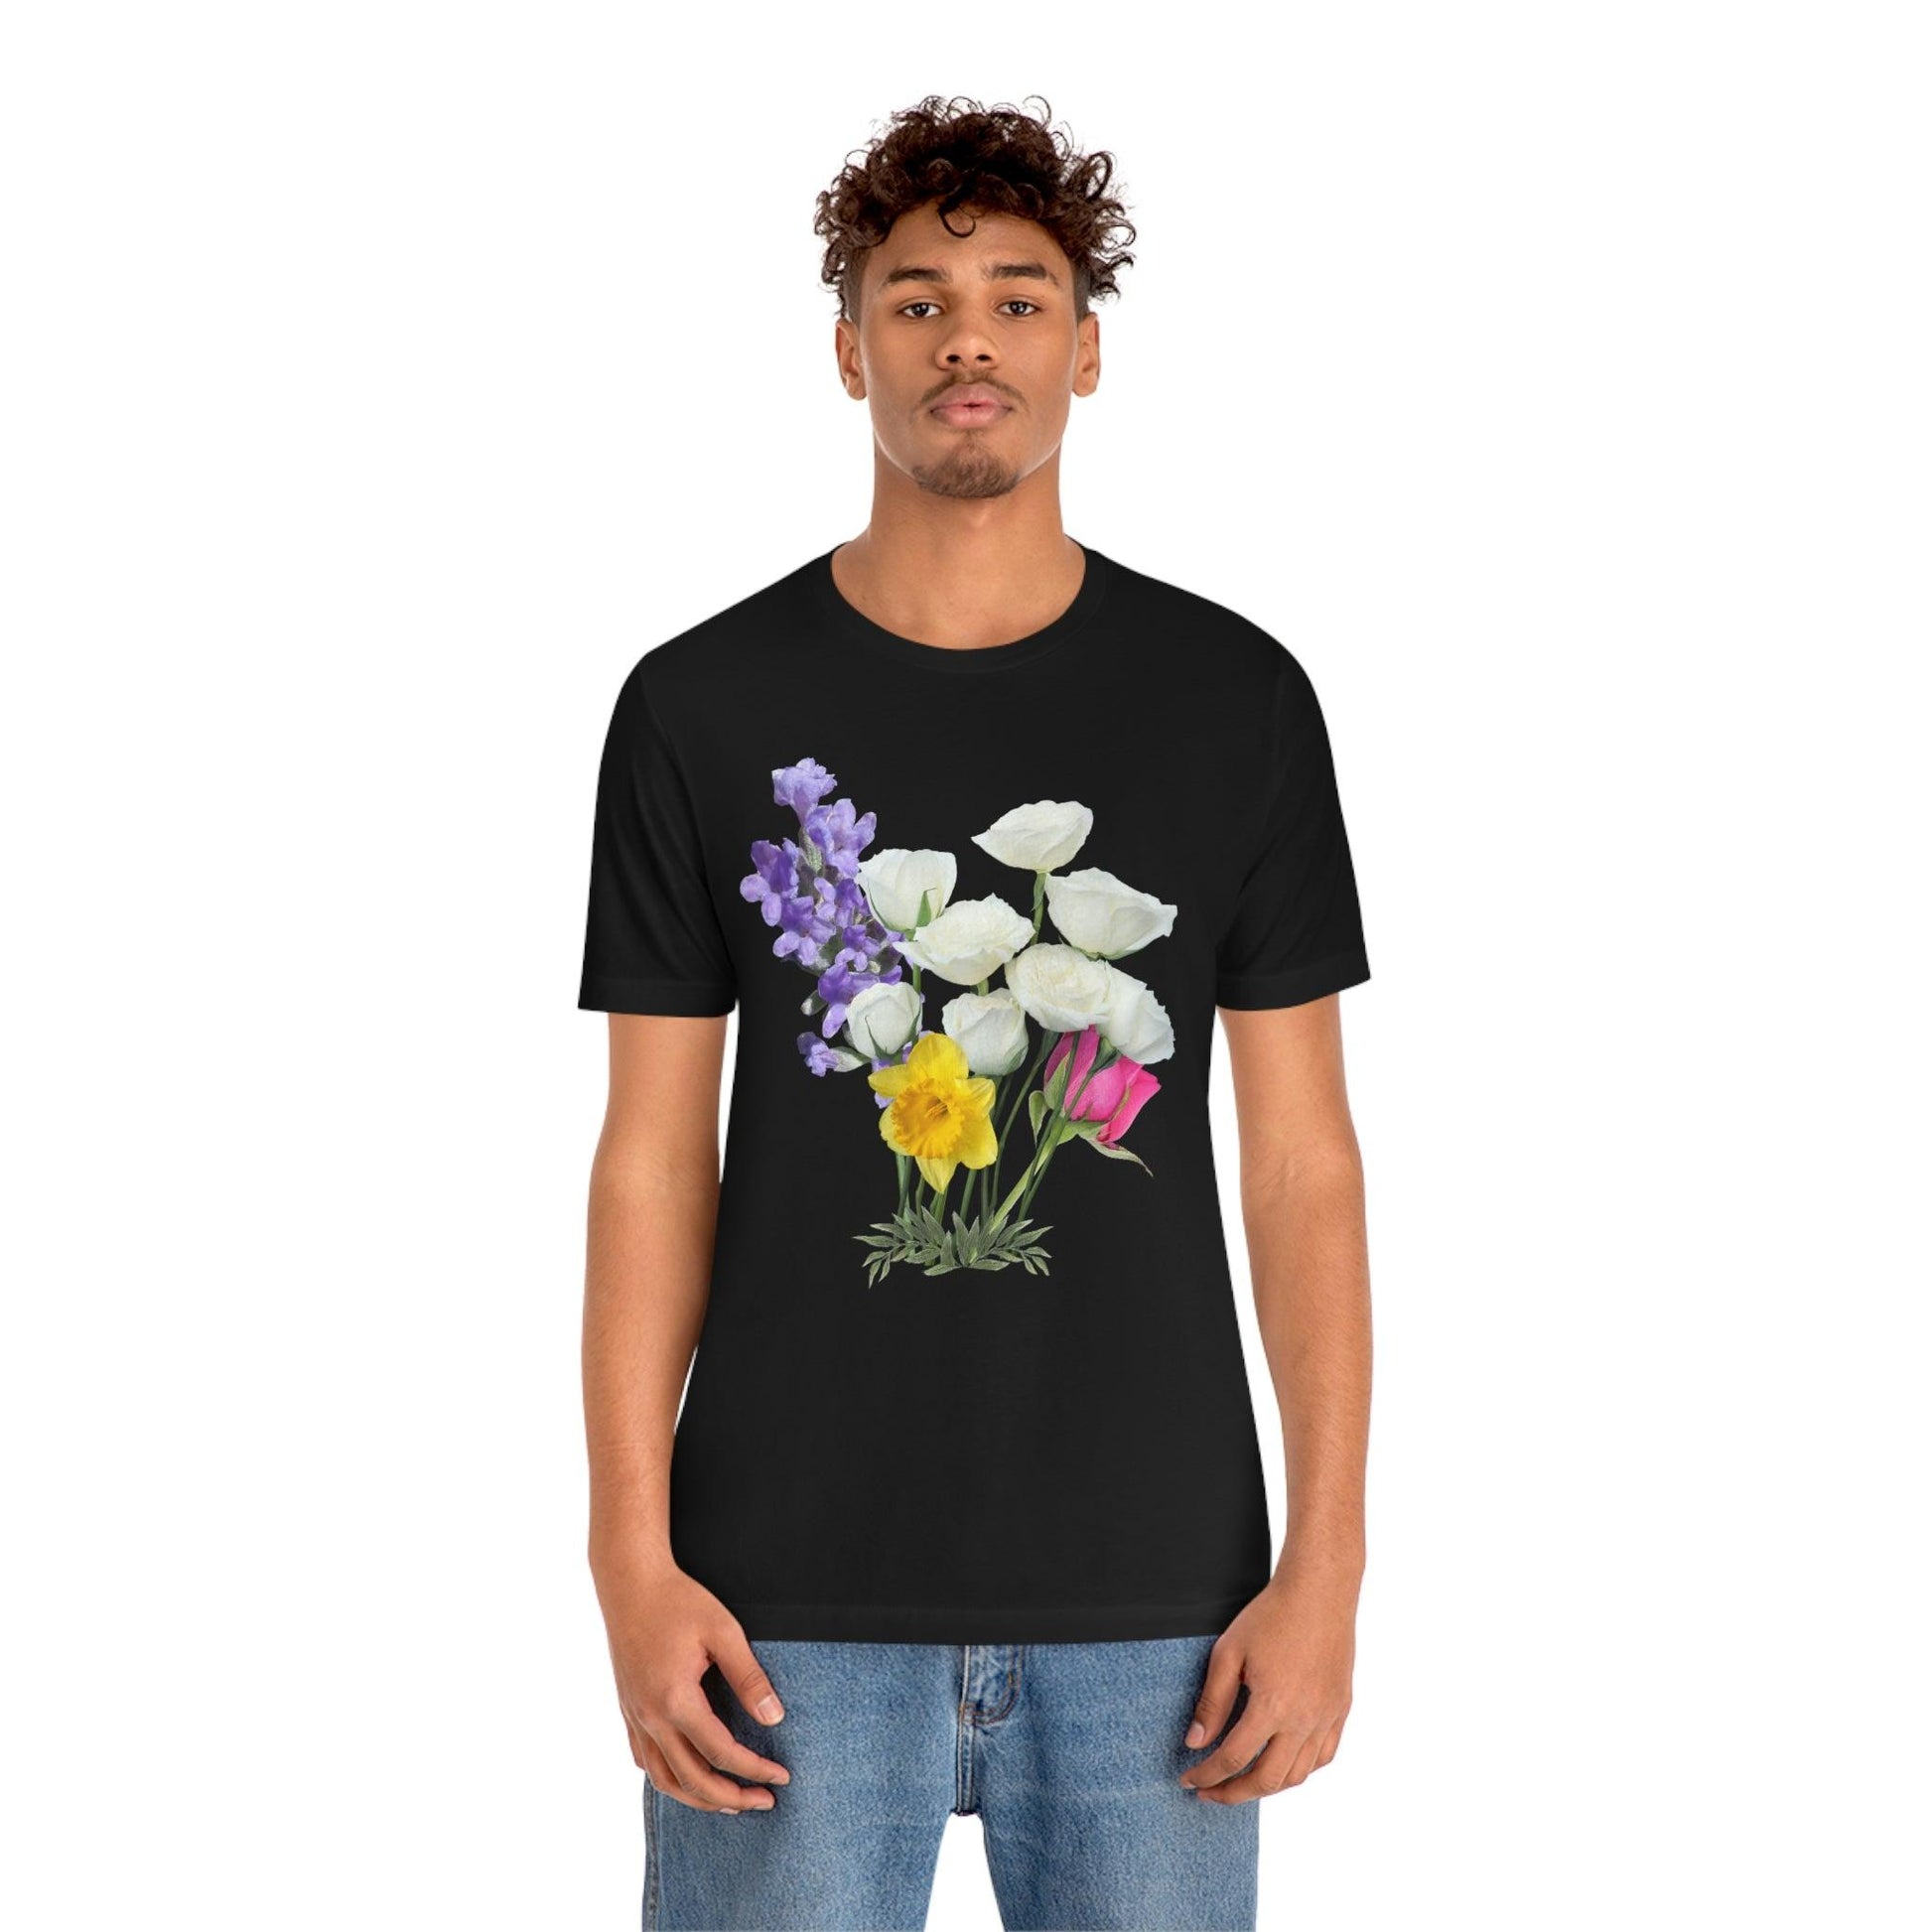 Cute Flower shirt - Nature lover Shirt - Flower lover shirt - Giftsmojo